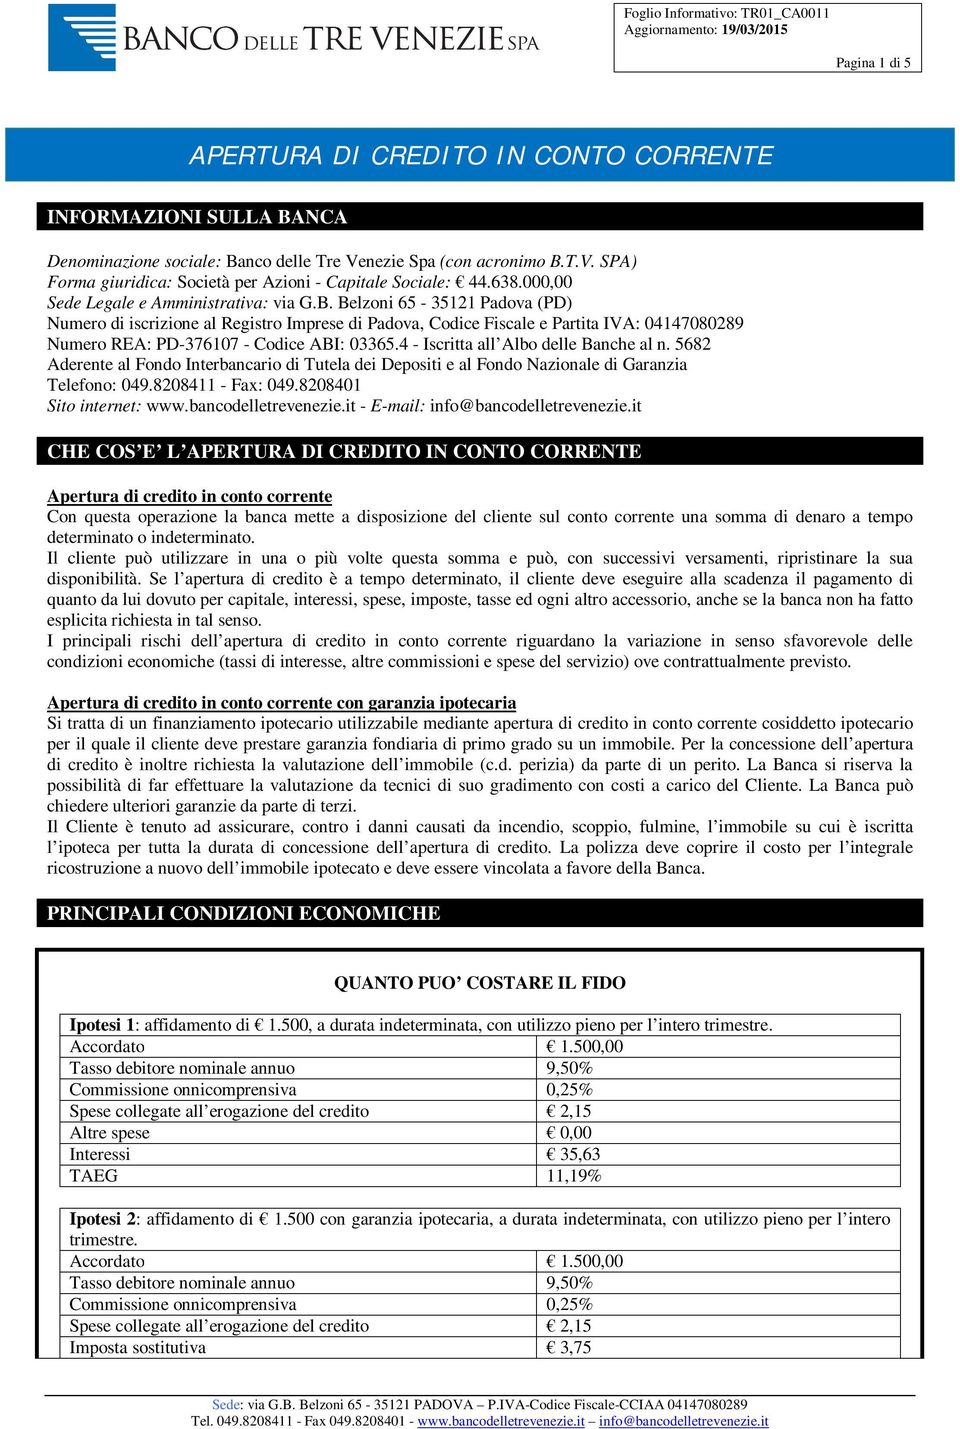 Belzoni 65-35121 Padova (PD) Numero di iscrizione al Registro Imprese di Padova, Codice Fiscale e Partita IVA: 04147080289 Numero REA: PD-376107 - Codice ABI: 03365.